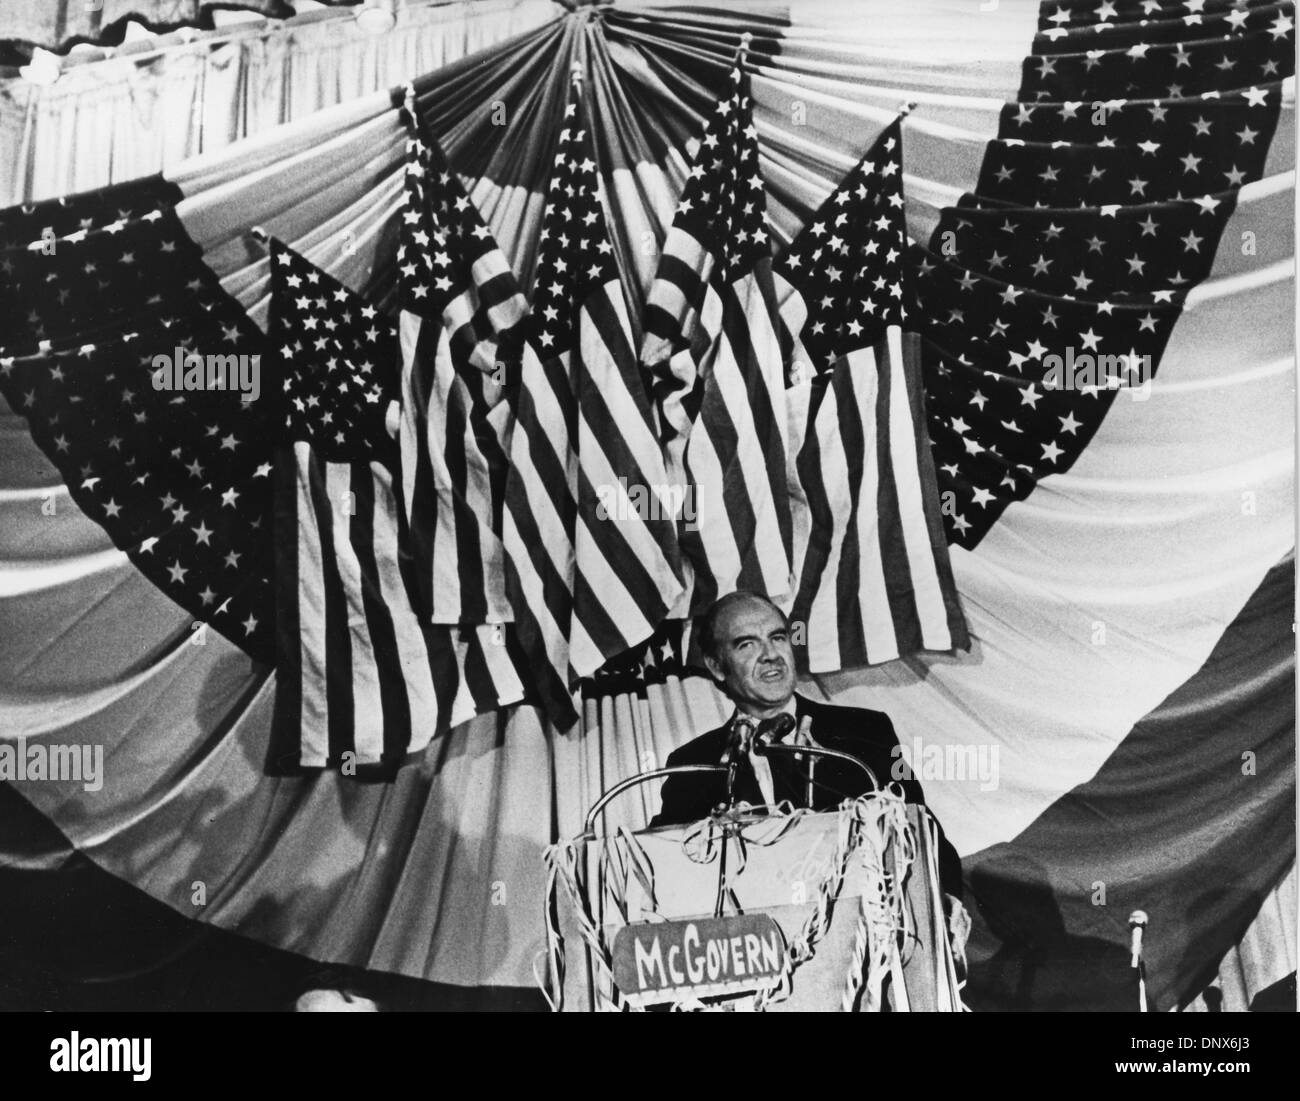 Le 3 novembre 1972 - New York, NY, États-Unis - Le sénateur George MCGOVERN donne un discours lors d'un élection présidentielle 1972 rallye, sous les étoiles et les rayures de son pays. En présence de nombreux acteurs de cinéma et de théâtre. (Crédit Image : © Keystone Photos USA/Zumapress.com) Banque D'Images